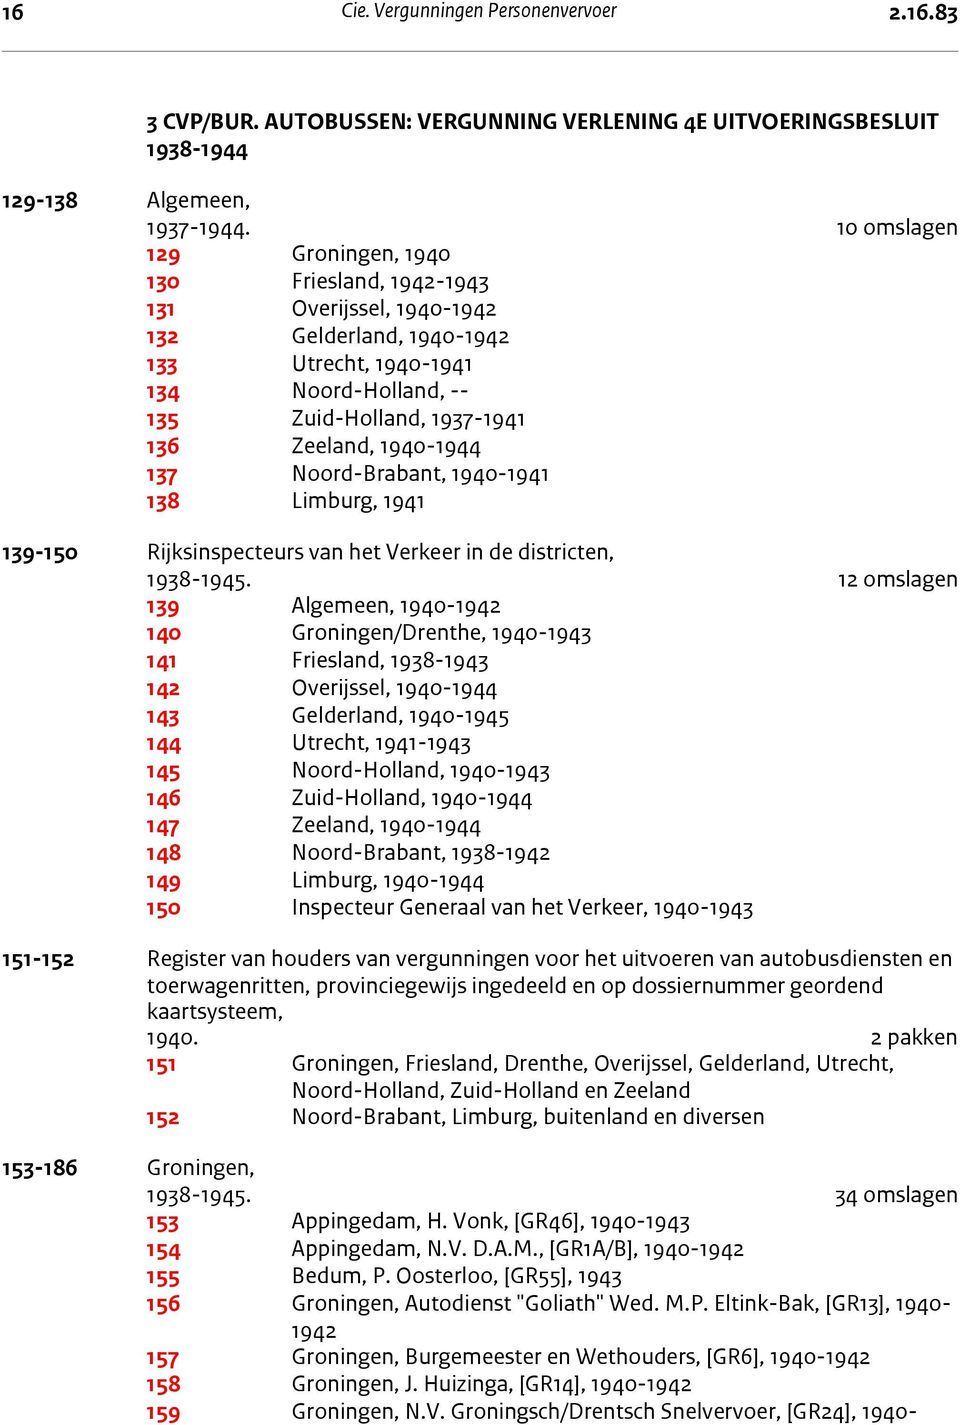 10 omslagen 129 Groningen, 1940 130 Friesland, 1942-1943 131 Overijssel, 1940-1942 132 Gelderland, 1940-1942 133 Utrecht, 1940-1941 134 Noord-Holland, -- 135 Zuid-Holland, 1937-1941 136 Zeeland,